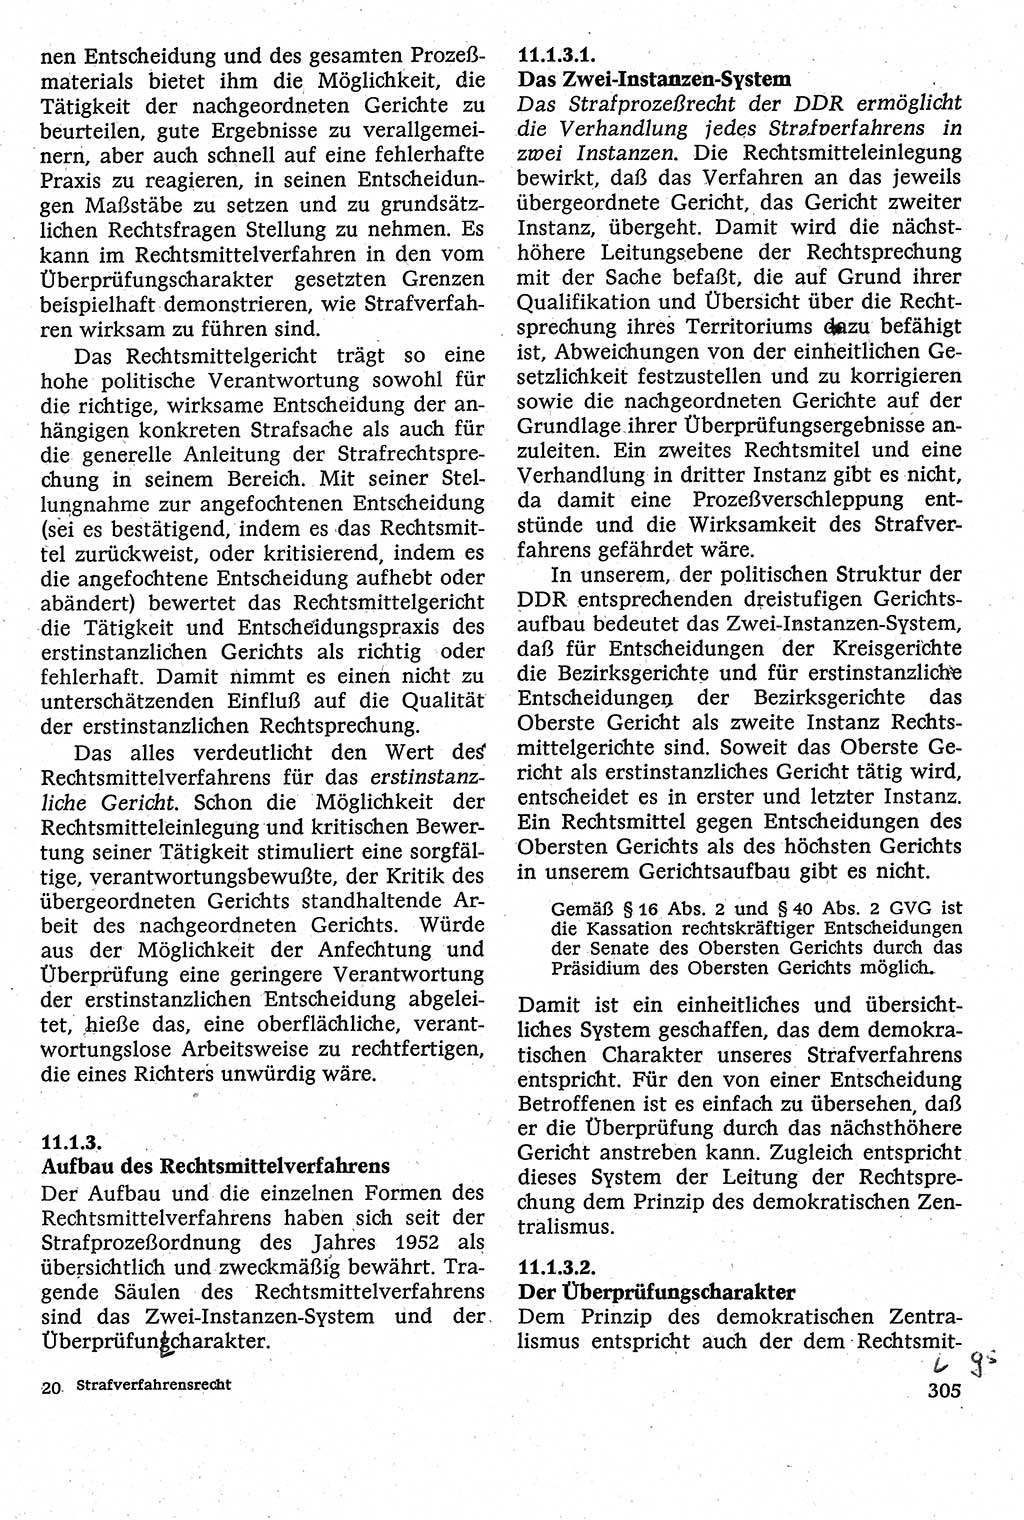 Strafverfahrensrecht [Deutsche Demokratische Republik (DDR)], Lehrbuch 1982, Seite 305 (Strafverf.-R. DDR Lb. 1982, S. 305)